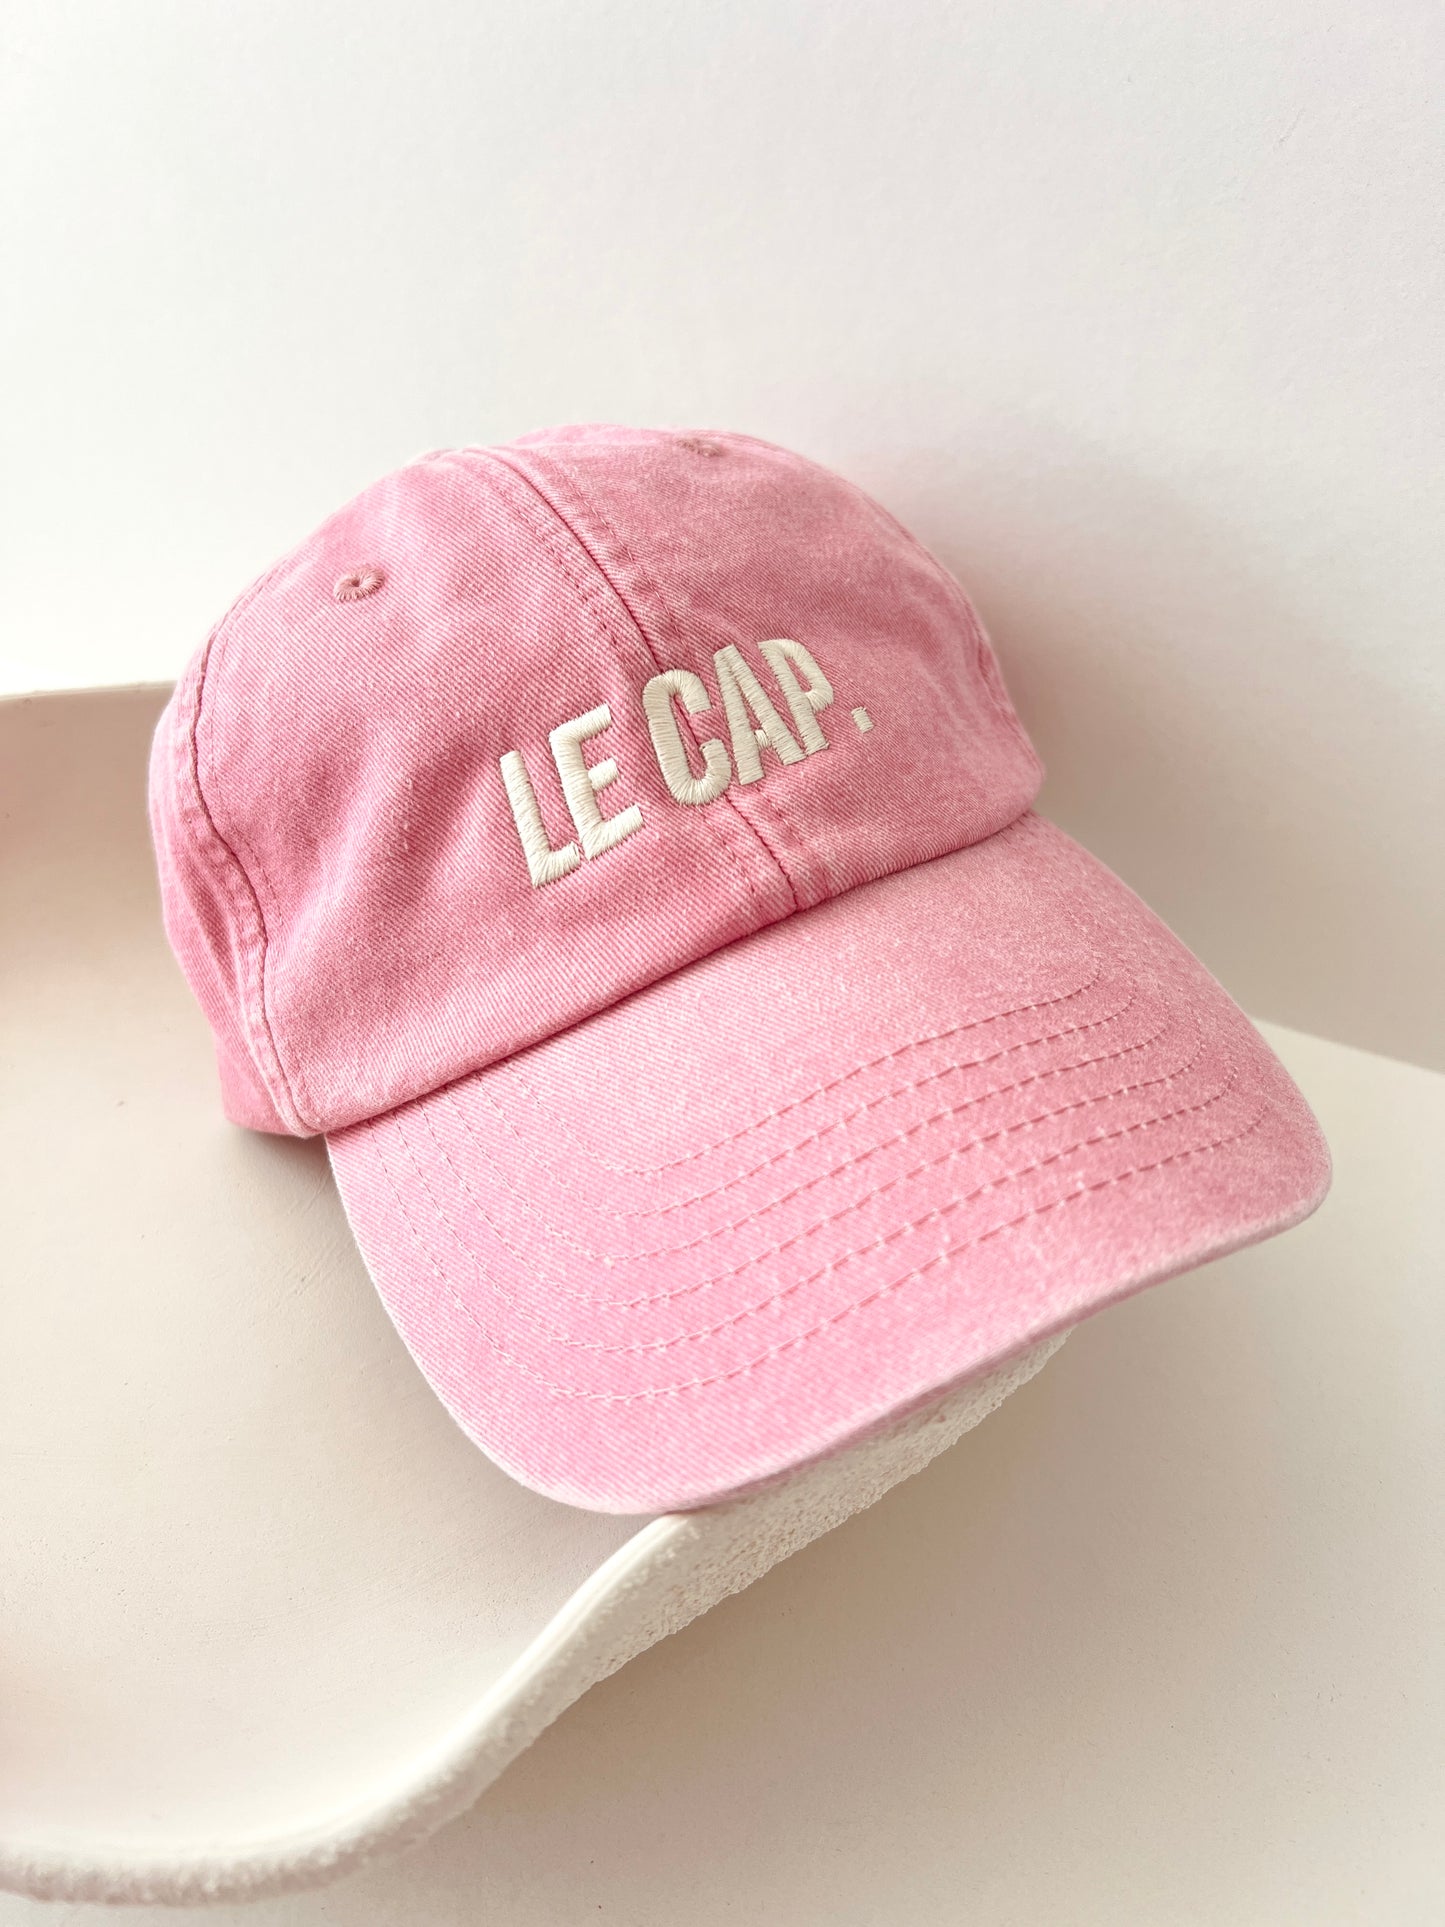 Cap - Vintage Pink